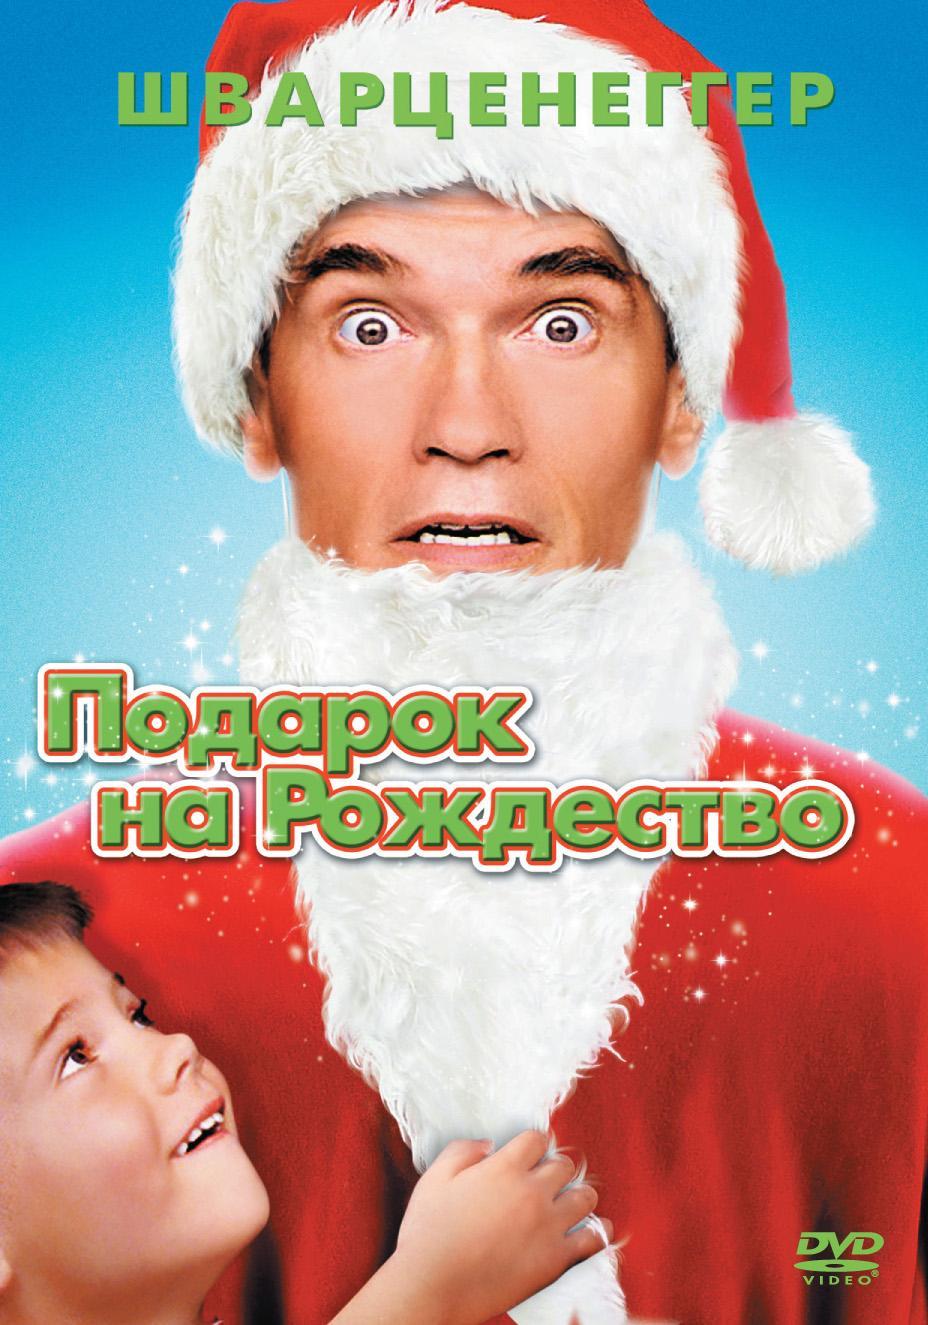 Постер фильма Подарок на Рождество | Jingle All the Way